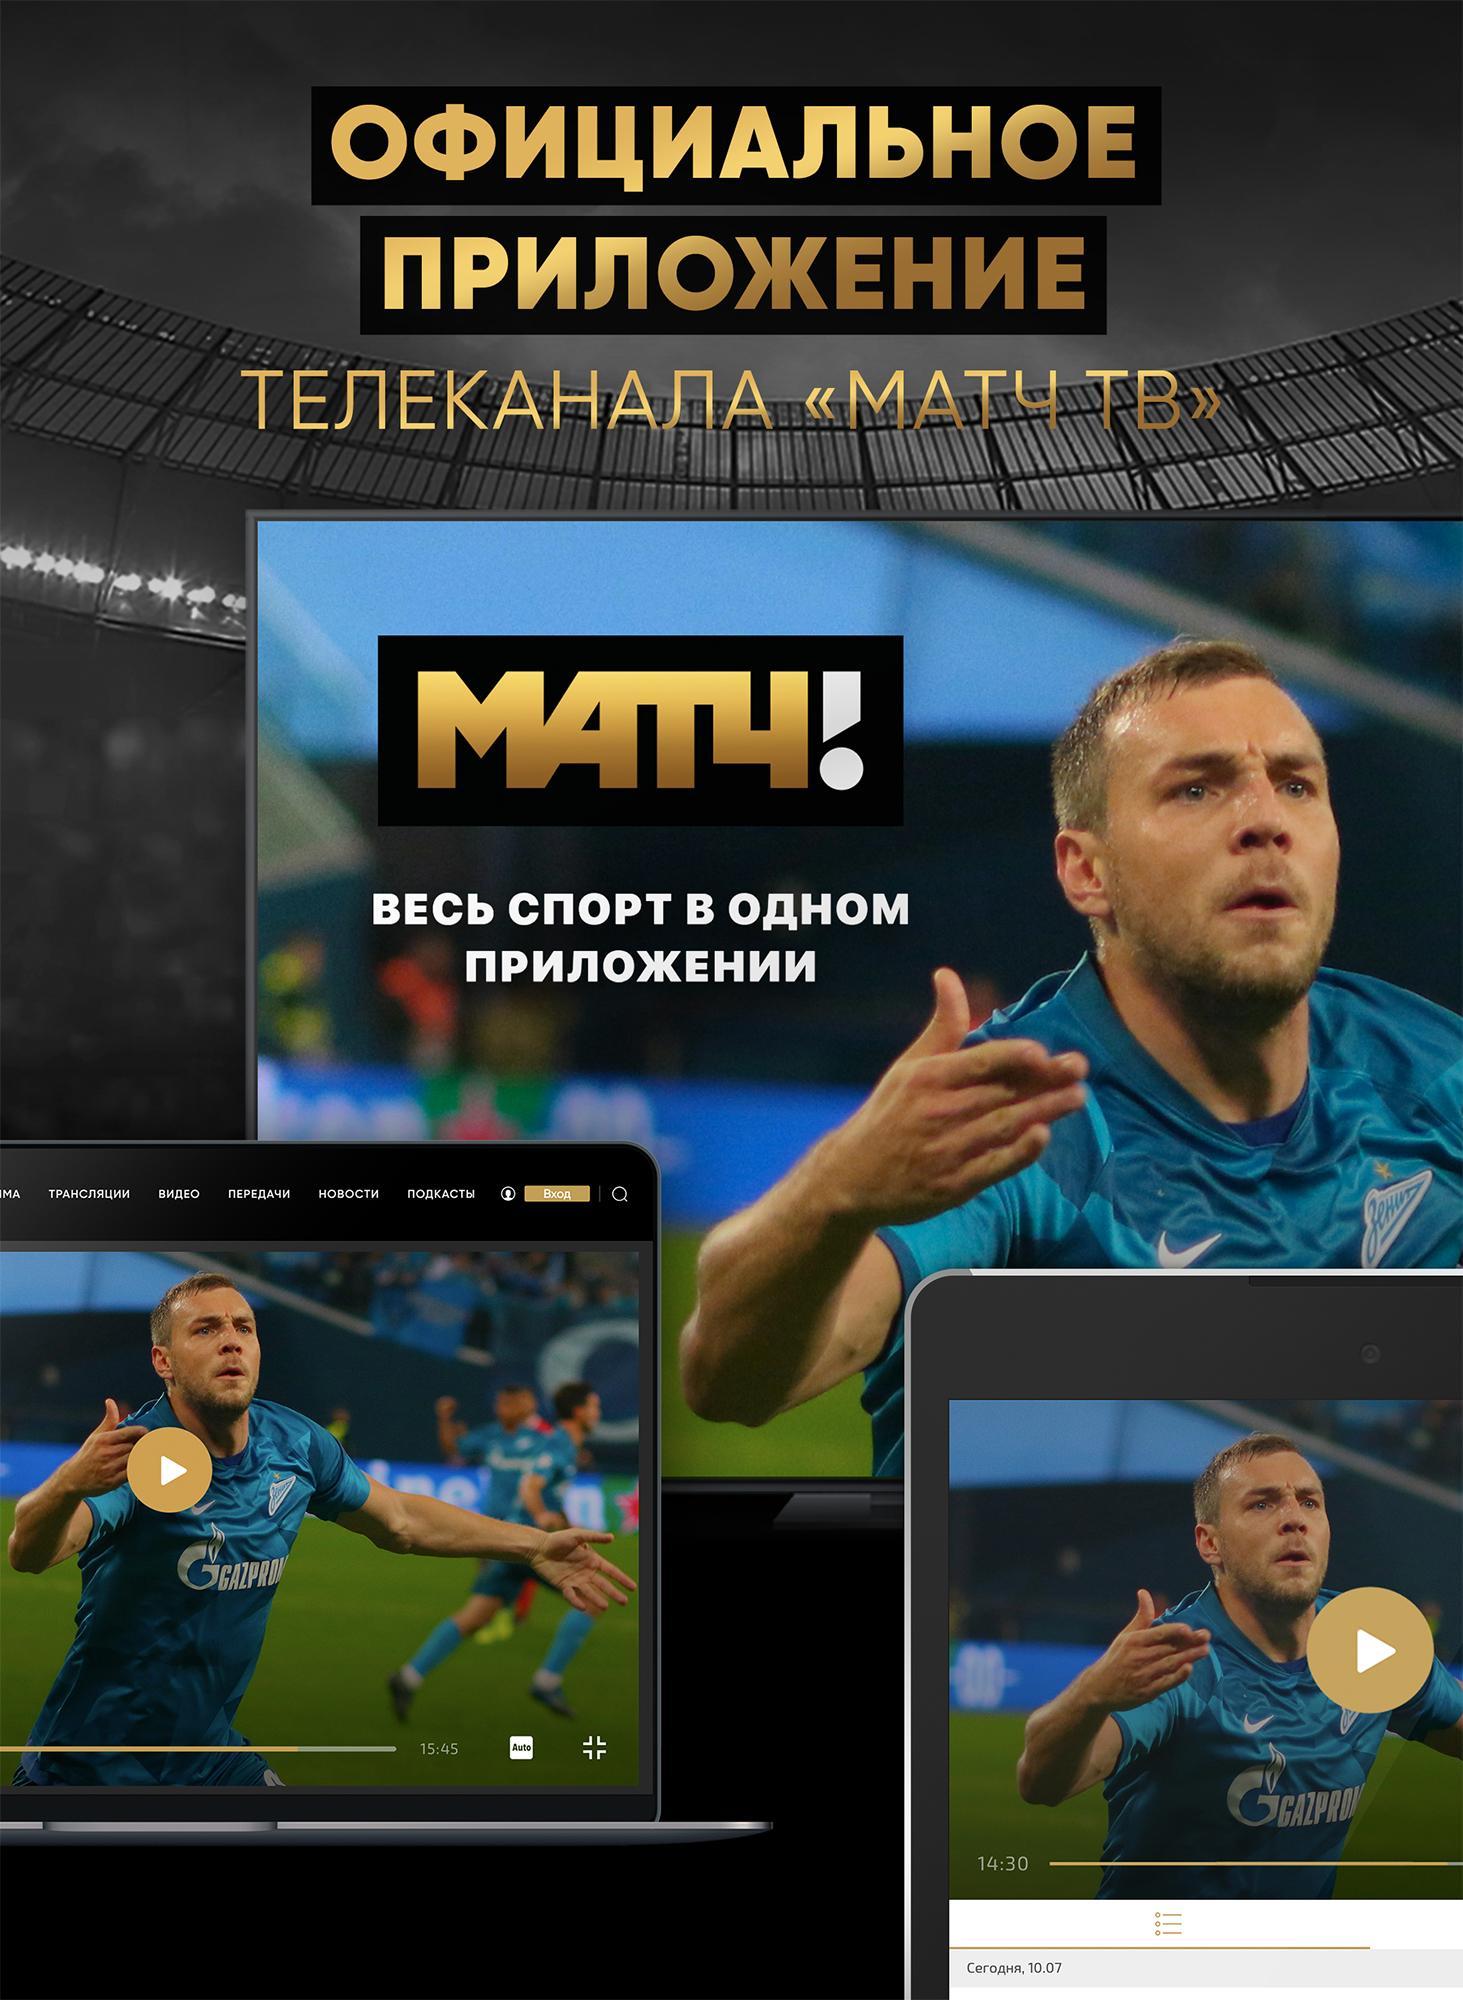 Var Match TV приложение. Приложение вар матч ТВ. Player of the Match. Var match tv приложение для андроид